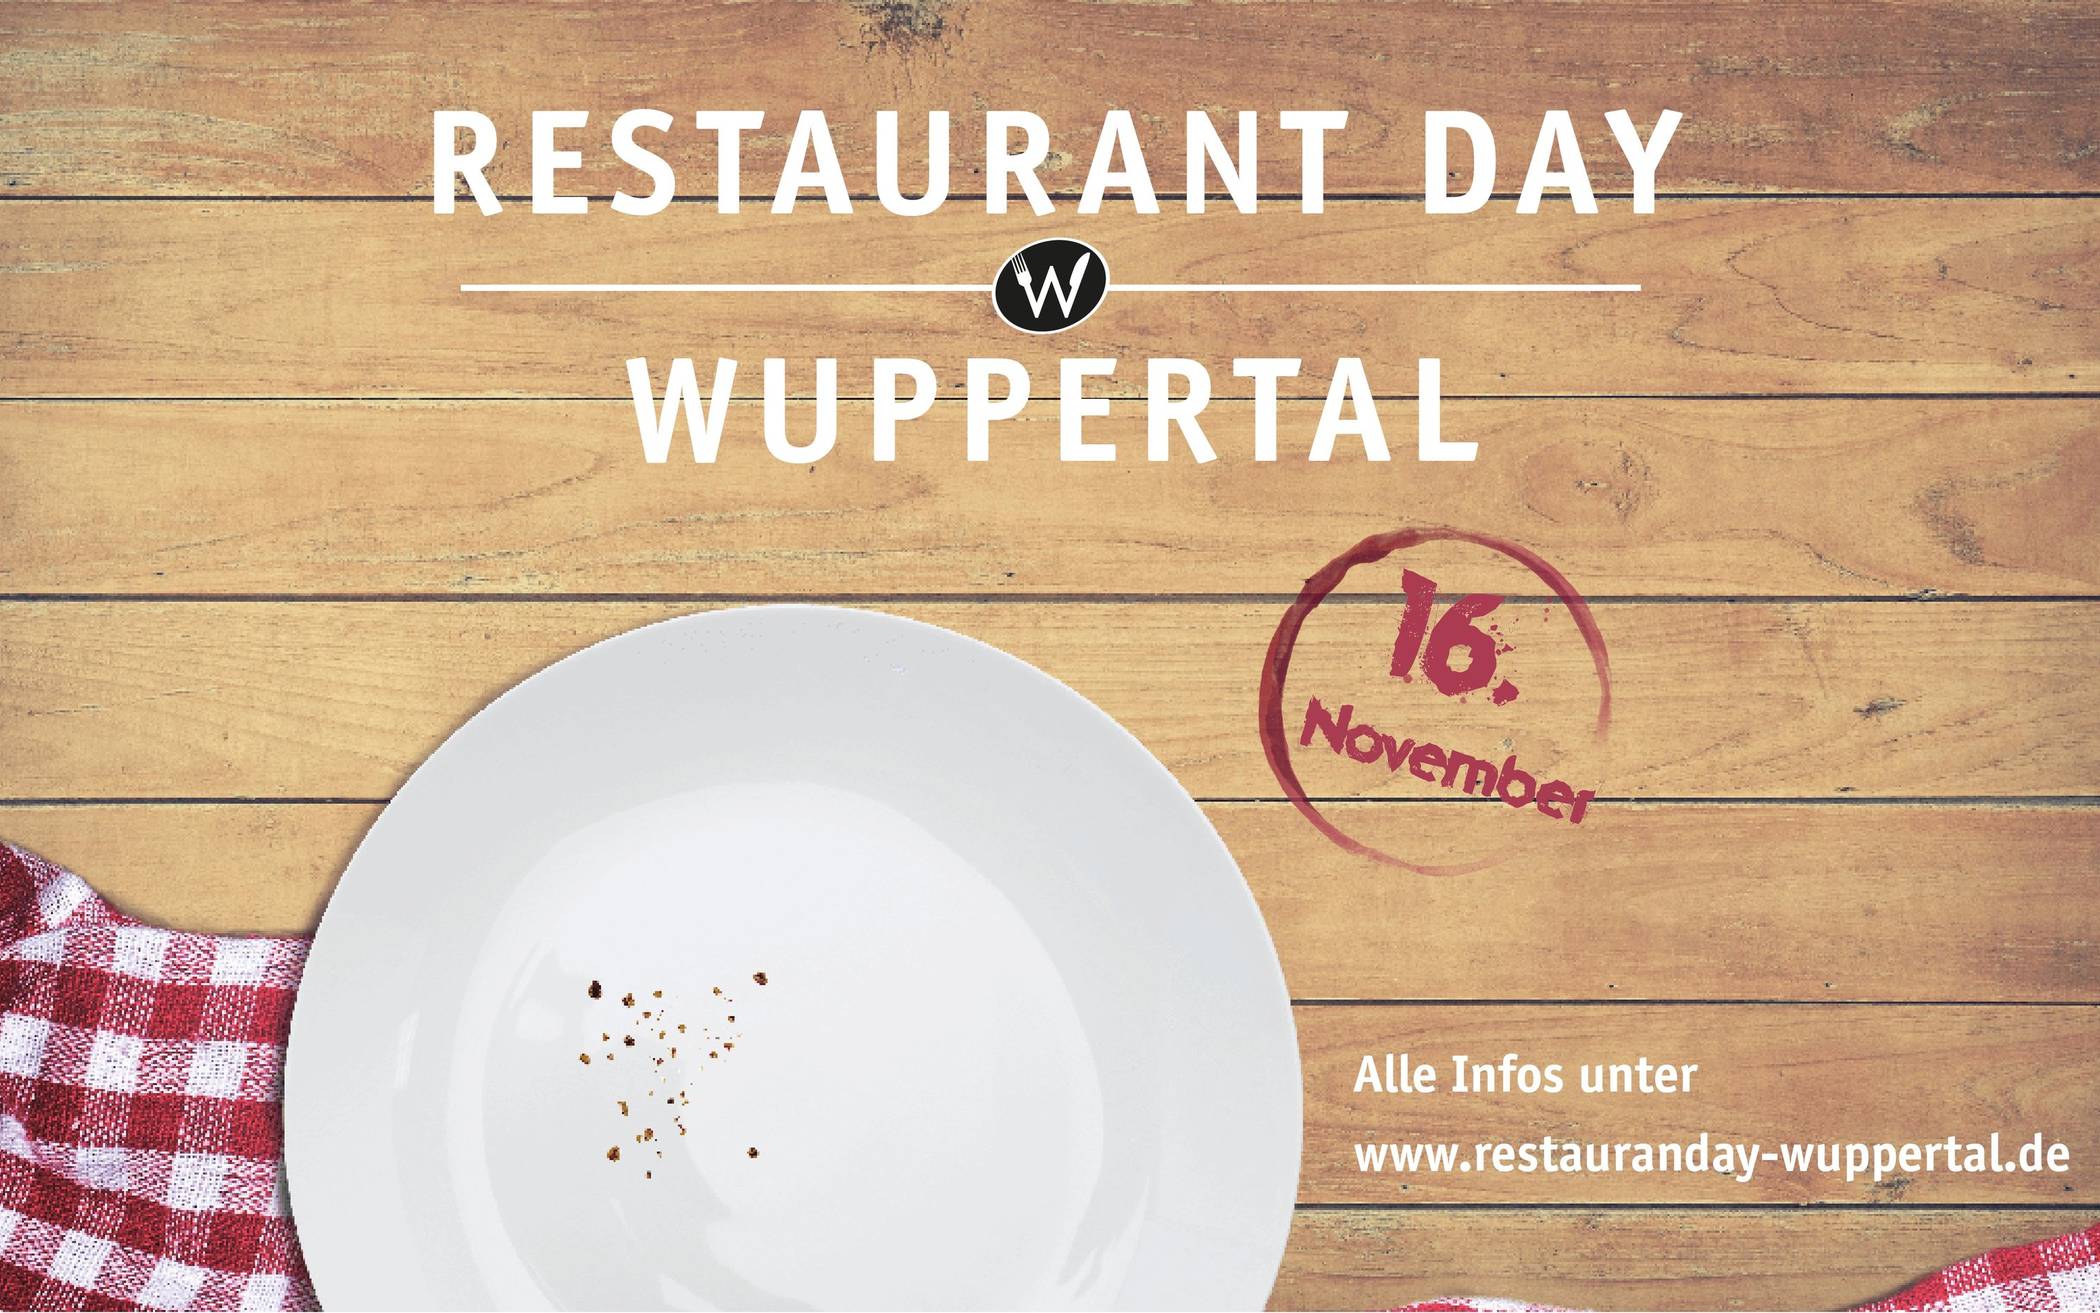  Am Samstag geht es los, von Frühstück über Kaffee und Kuchen bis zum Abendessen kann quer durch Wuppertal bei Wuppertalern gespeist werden.  